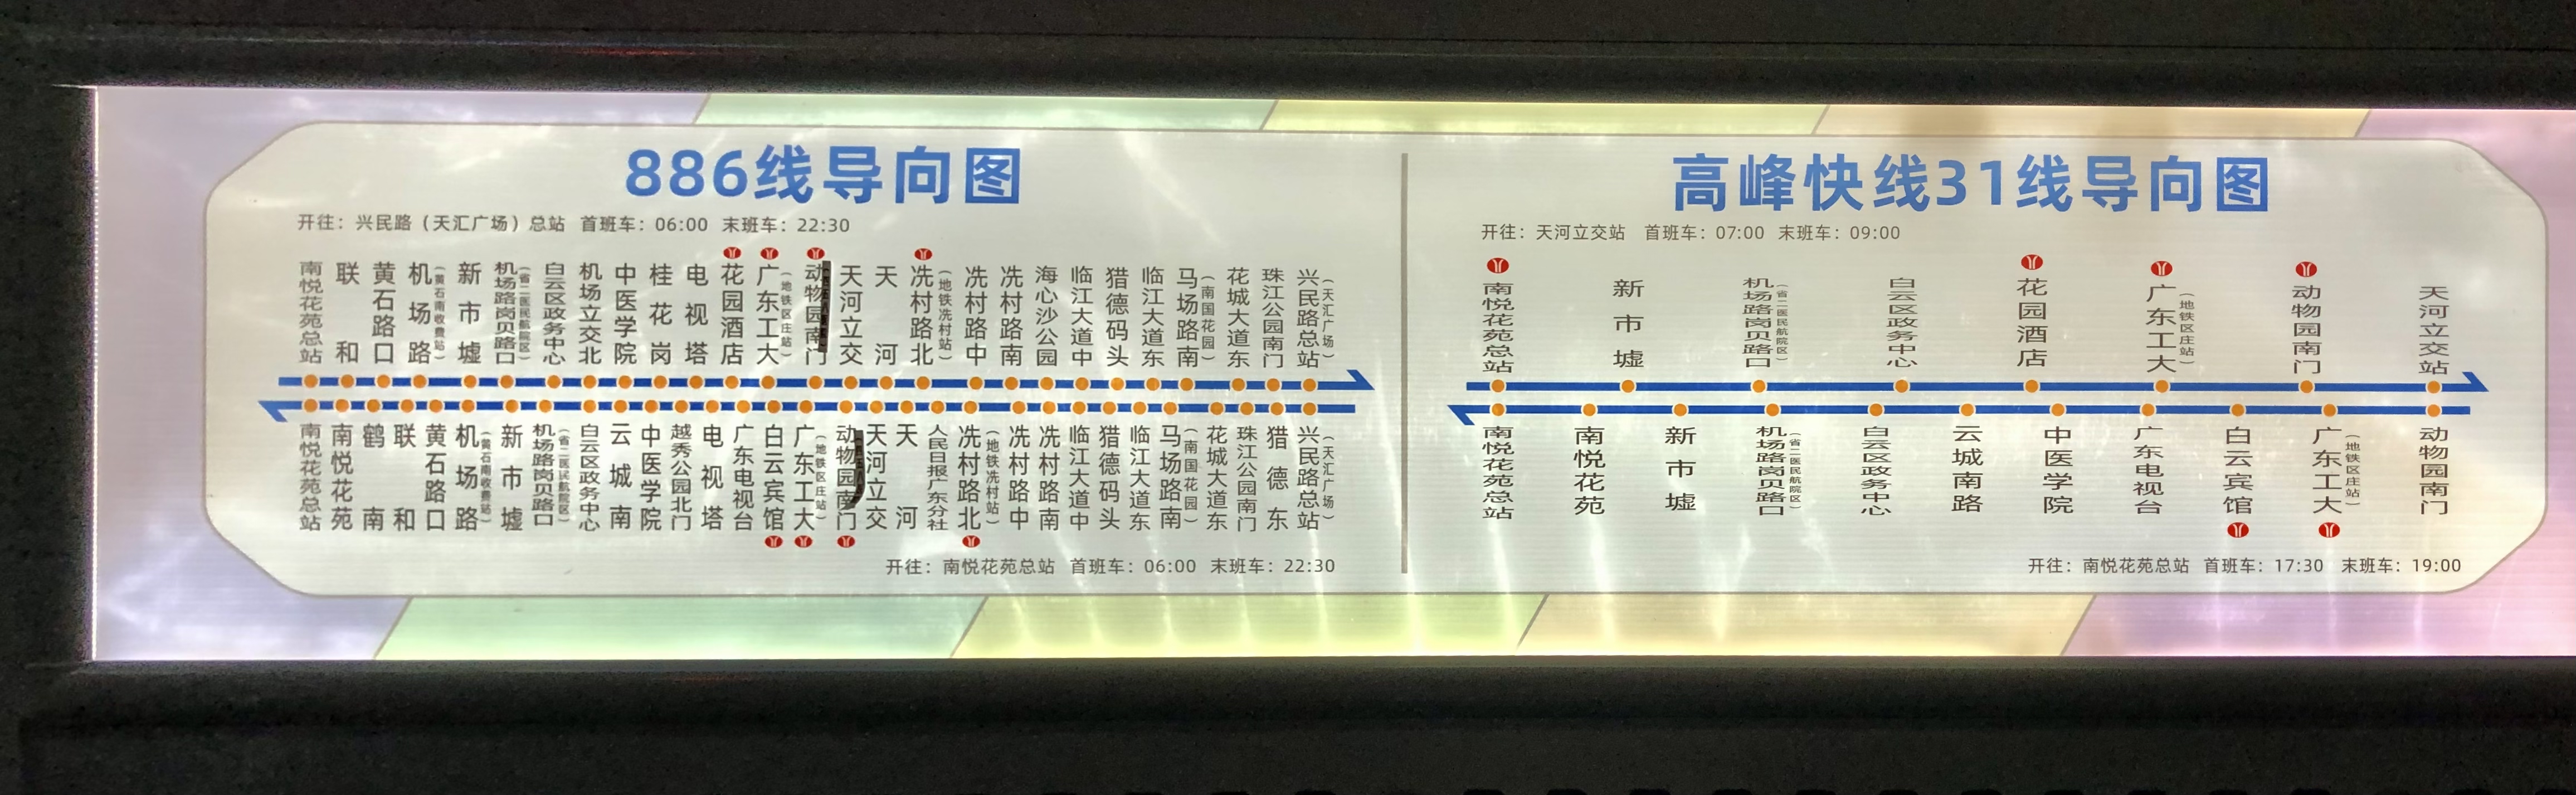 广州886路公交车路线